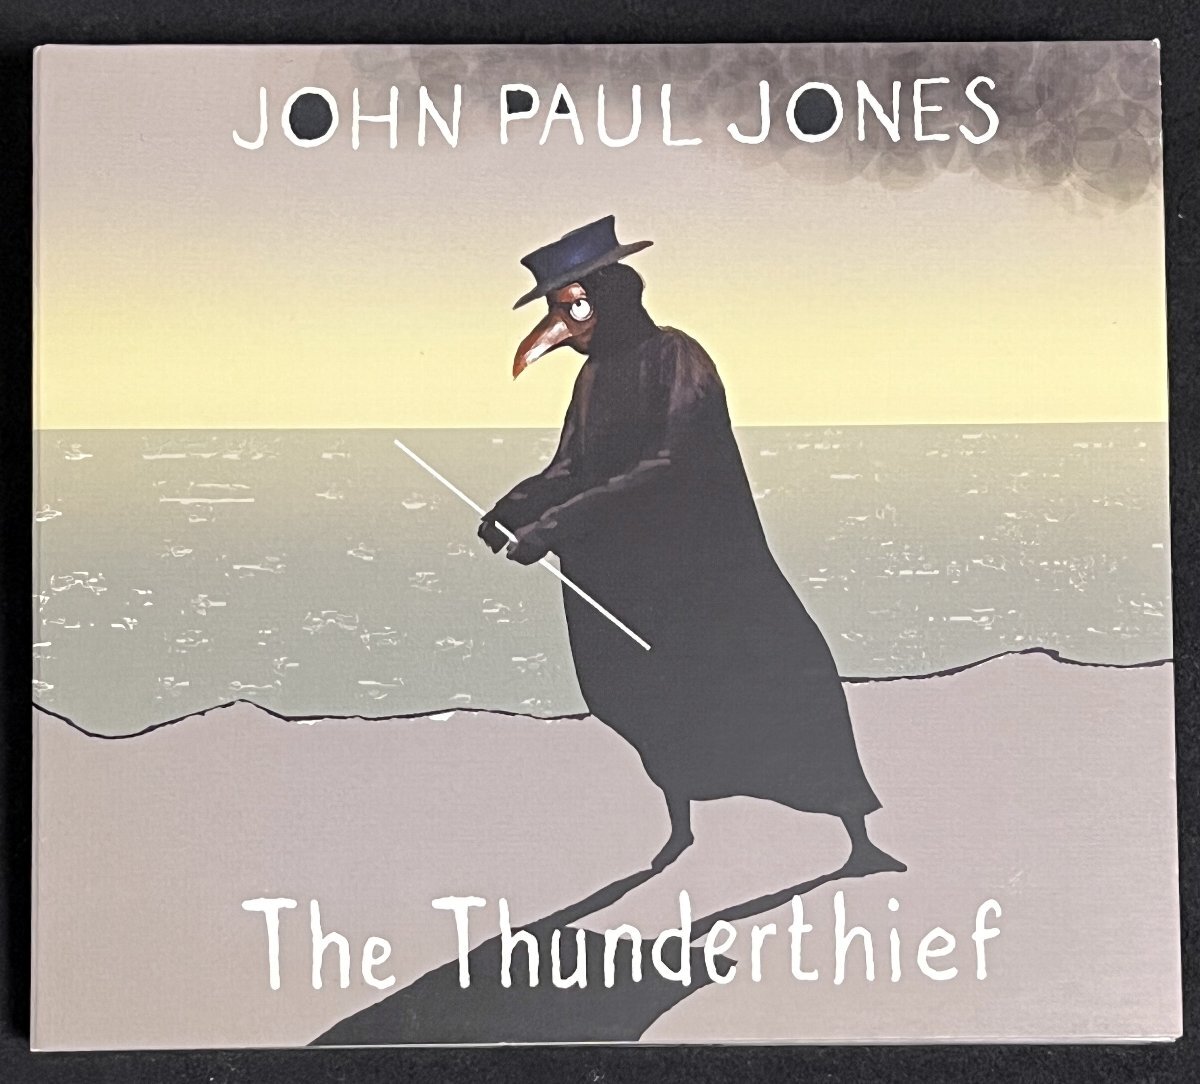 CD ジョン・ポール・ジョーンズ ザ・サンダーシーフ JOHN PAUL JONES THE THUNDERTHIEF 国内盤 デジパック仕様の画像1